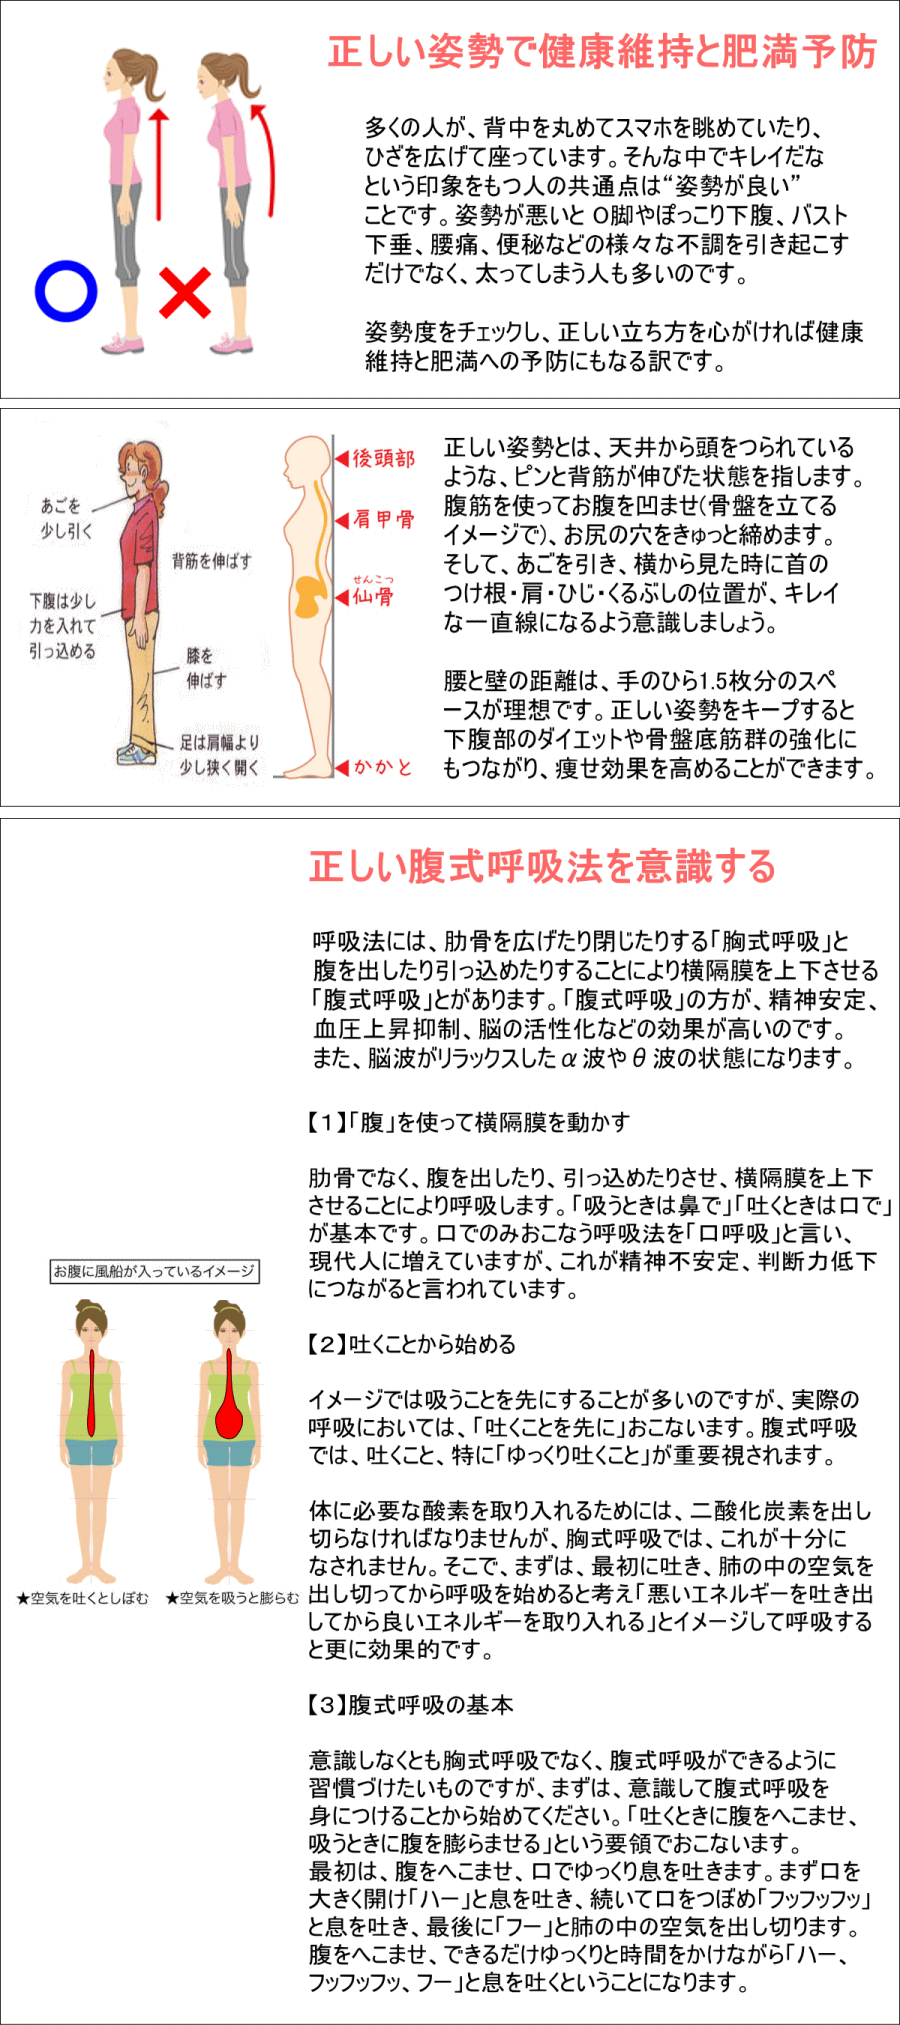 正しい姿勢と正しい呼吸は健康の基本です 日本吹矢レクリエーション協会